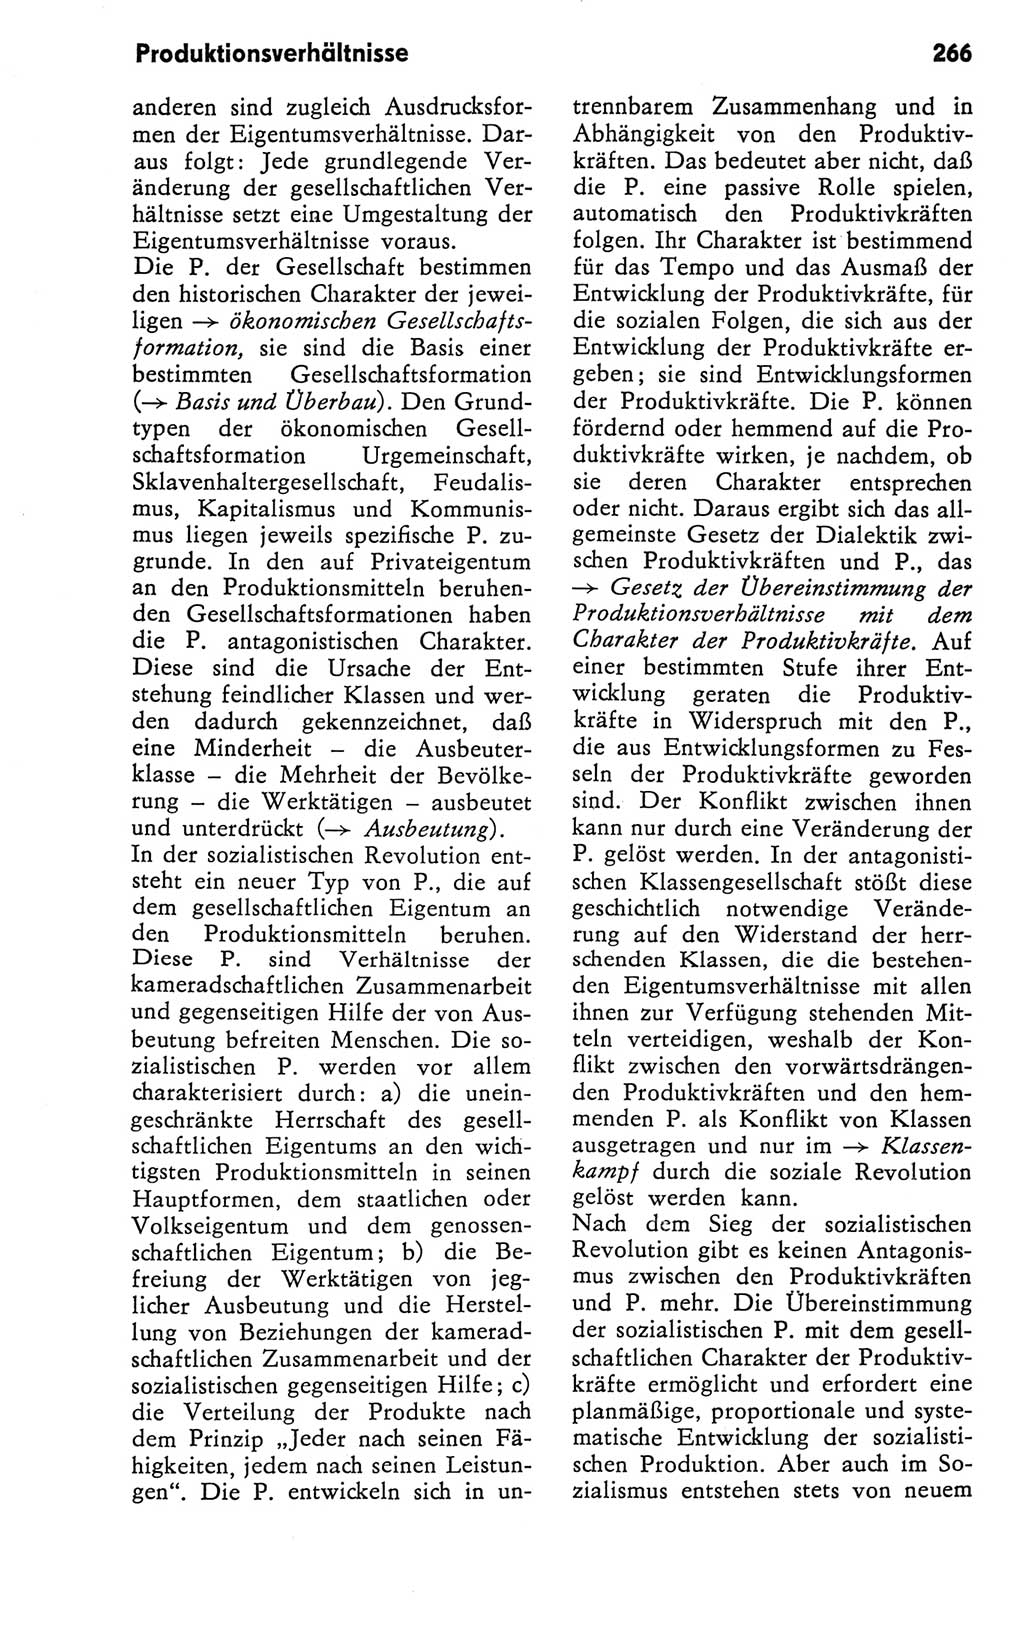 Kleines Wörterbuch der marxistisch-leninistischen Philosophie [Deutsche Demokratische Republik (DDR)] 1981, Seite 266 (Kl. Wb. ML Phil. DDR 1981, S. 266)